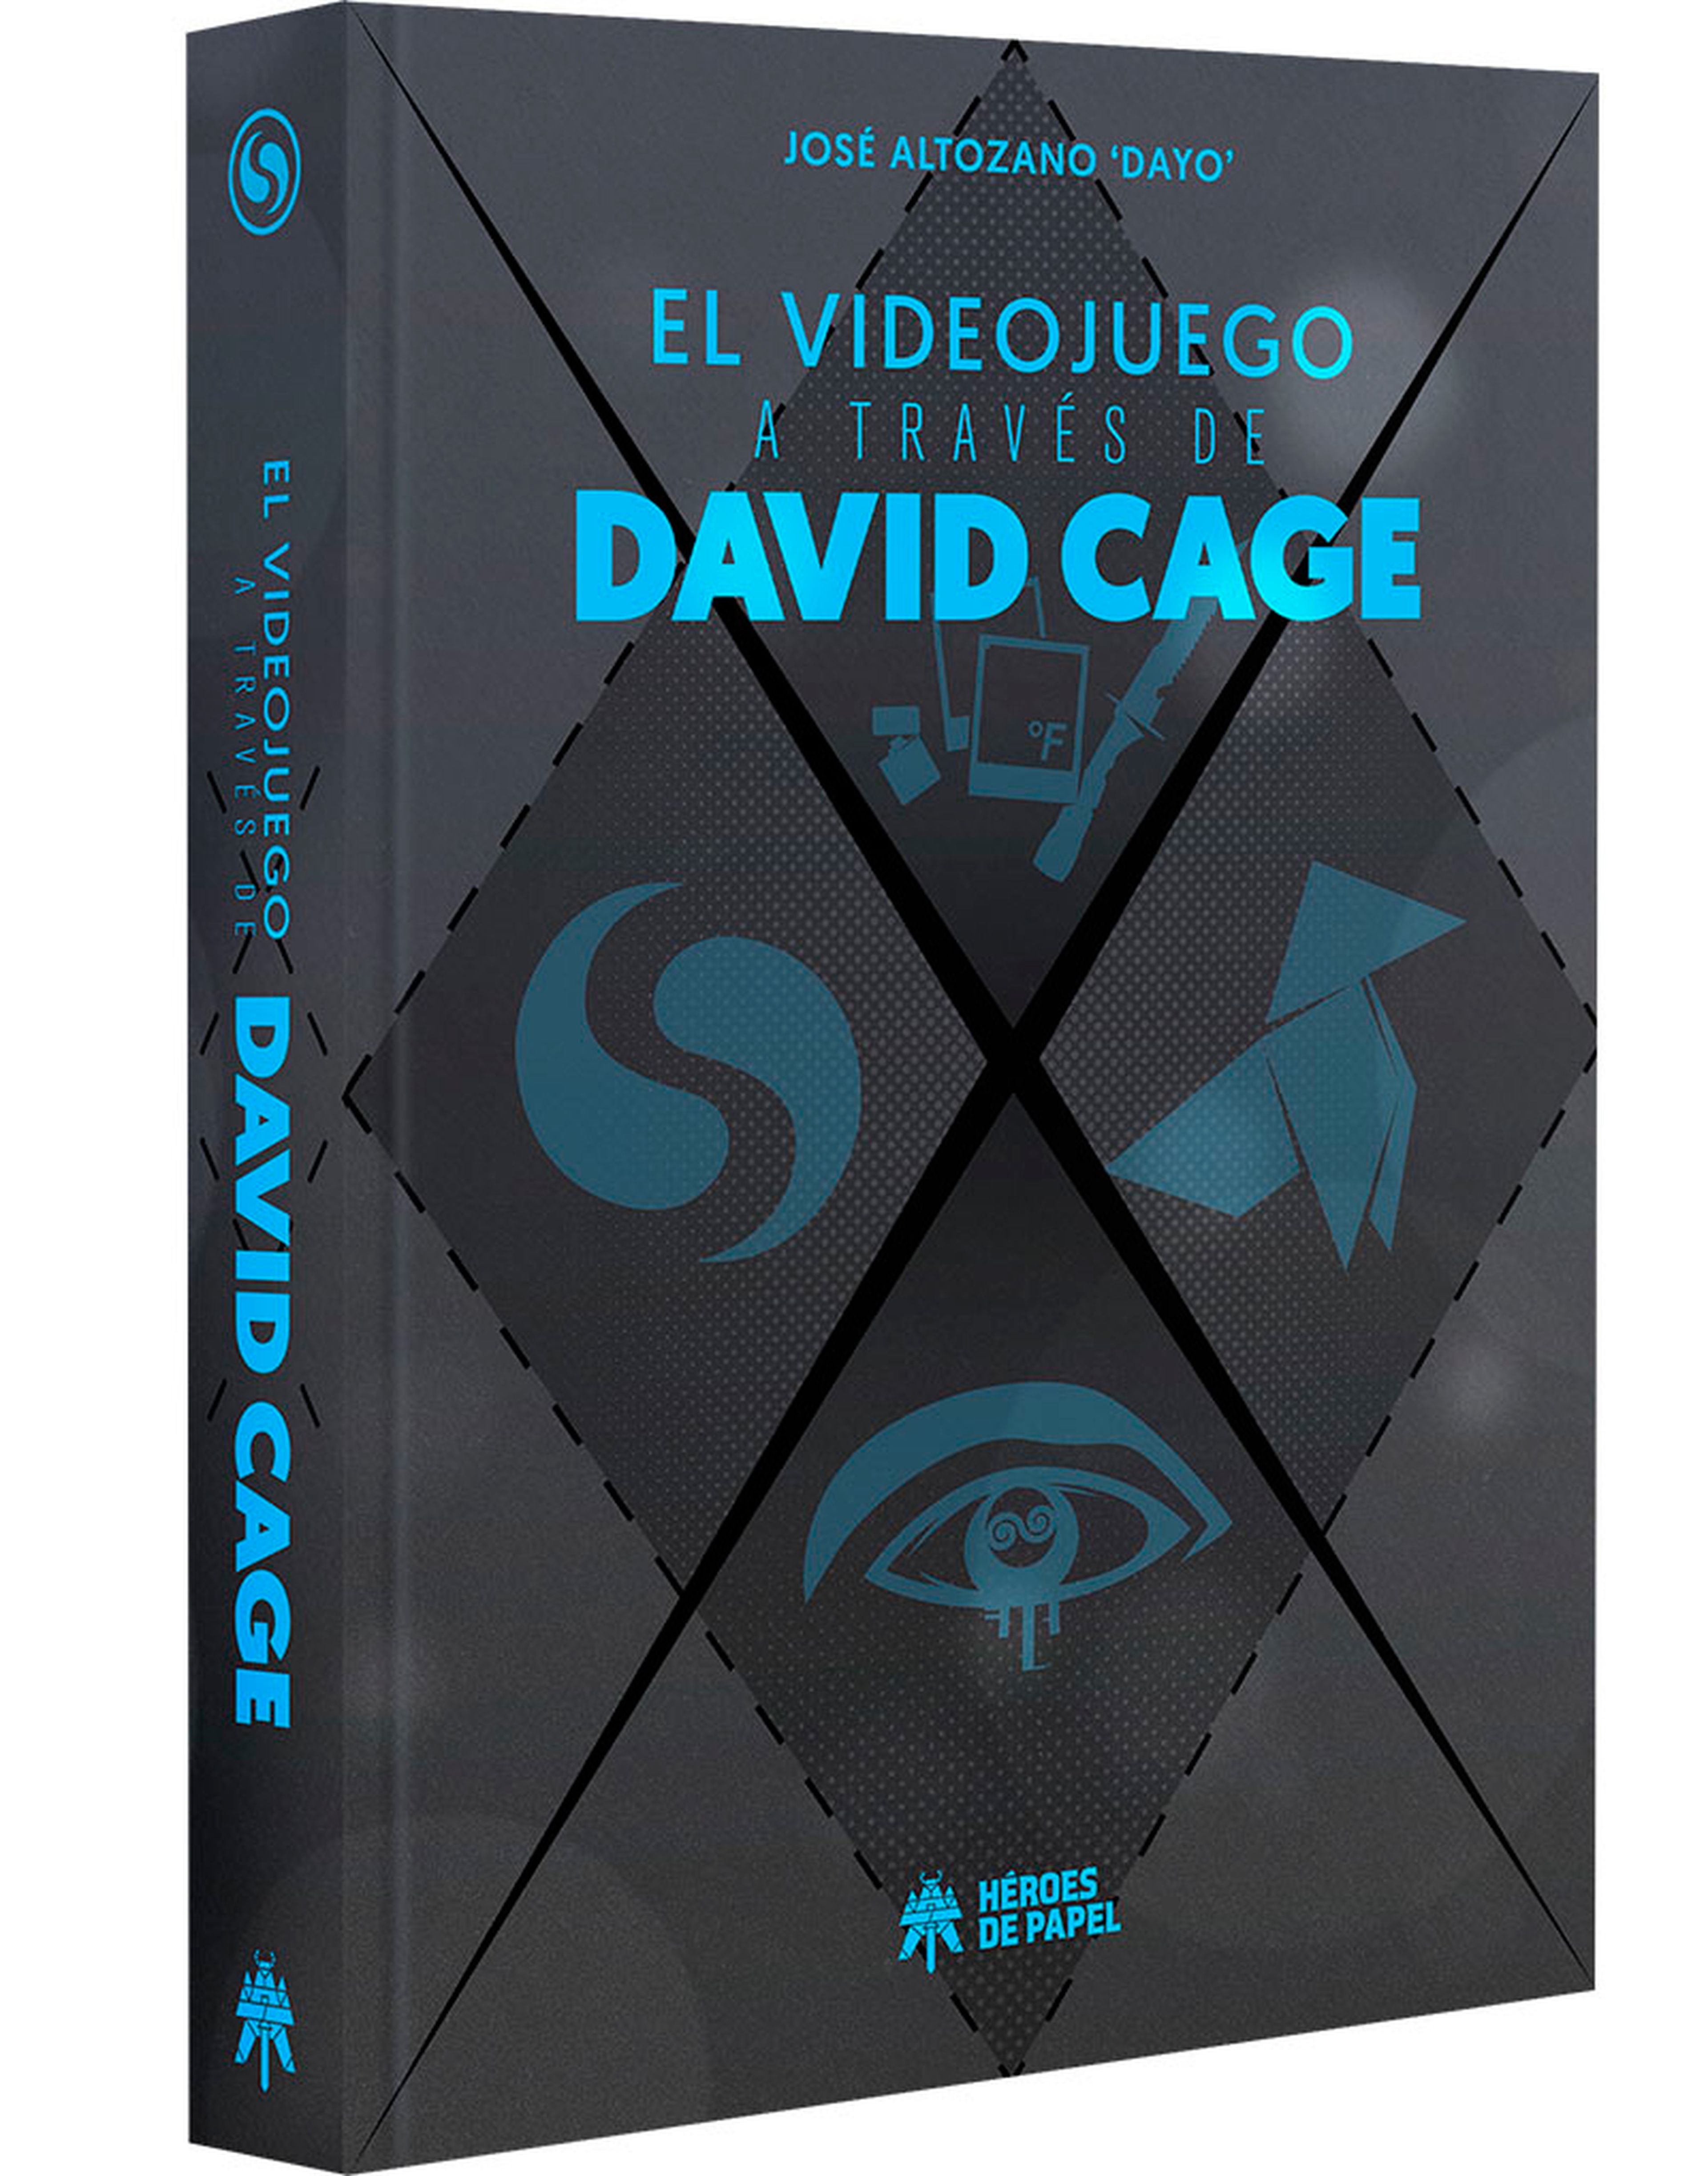 El videojuego a través de David Cage estará disponible a partir del 17 de marzo.